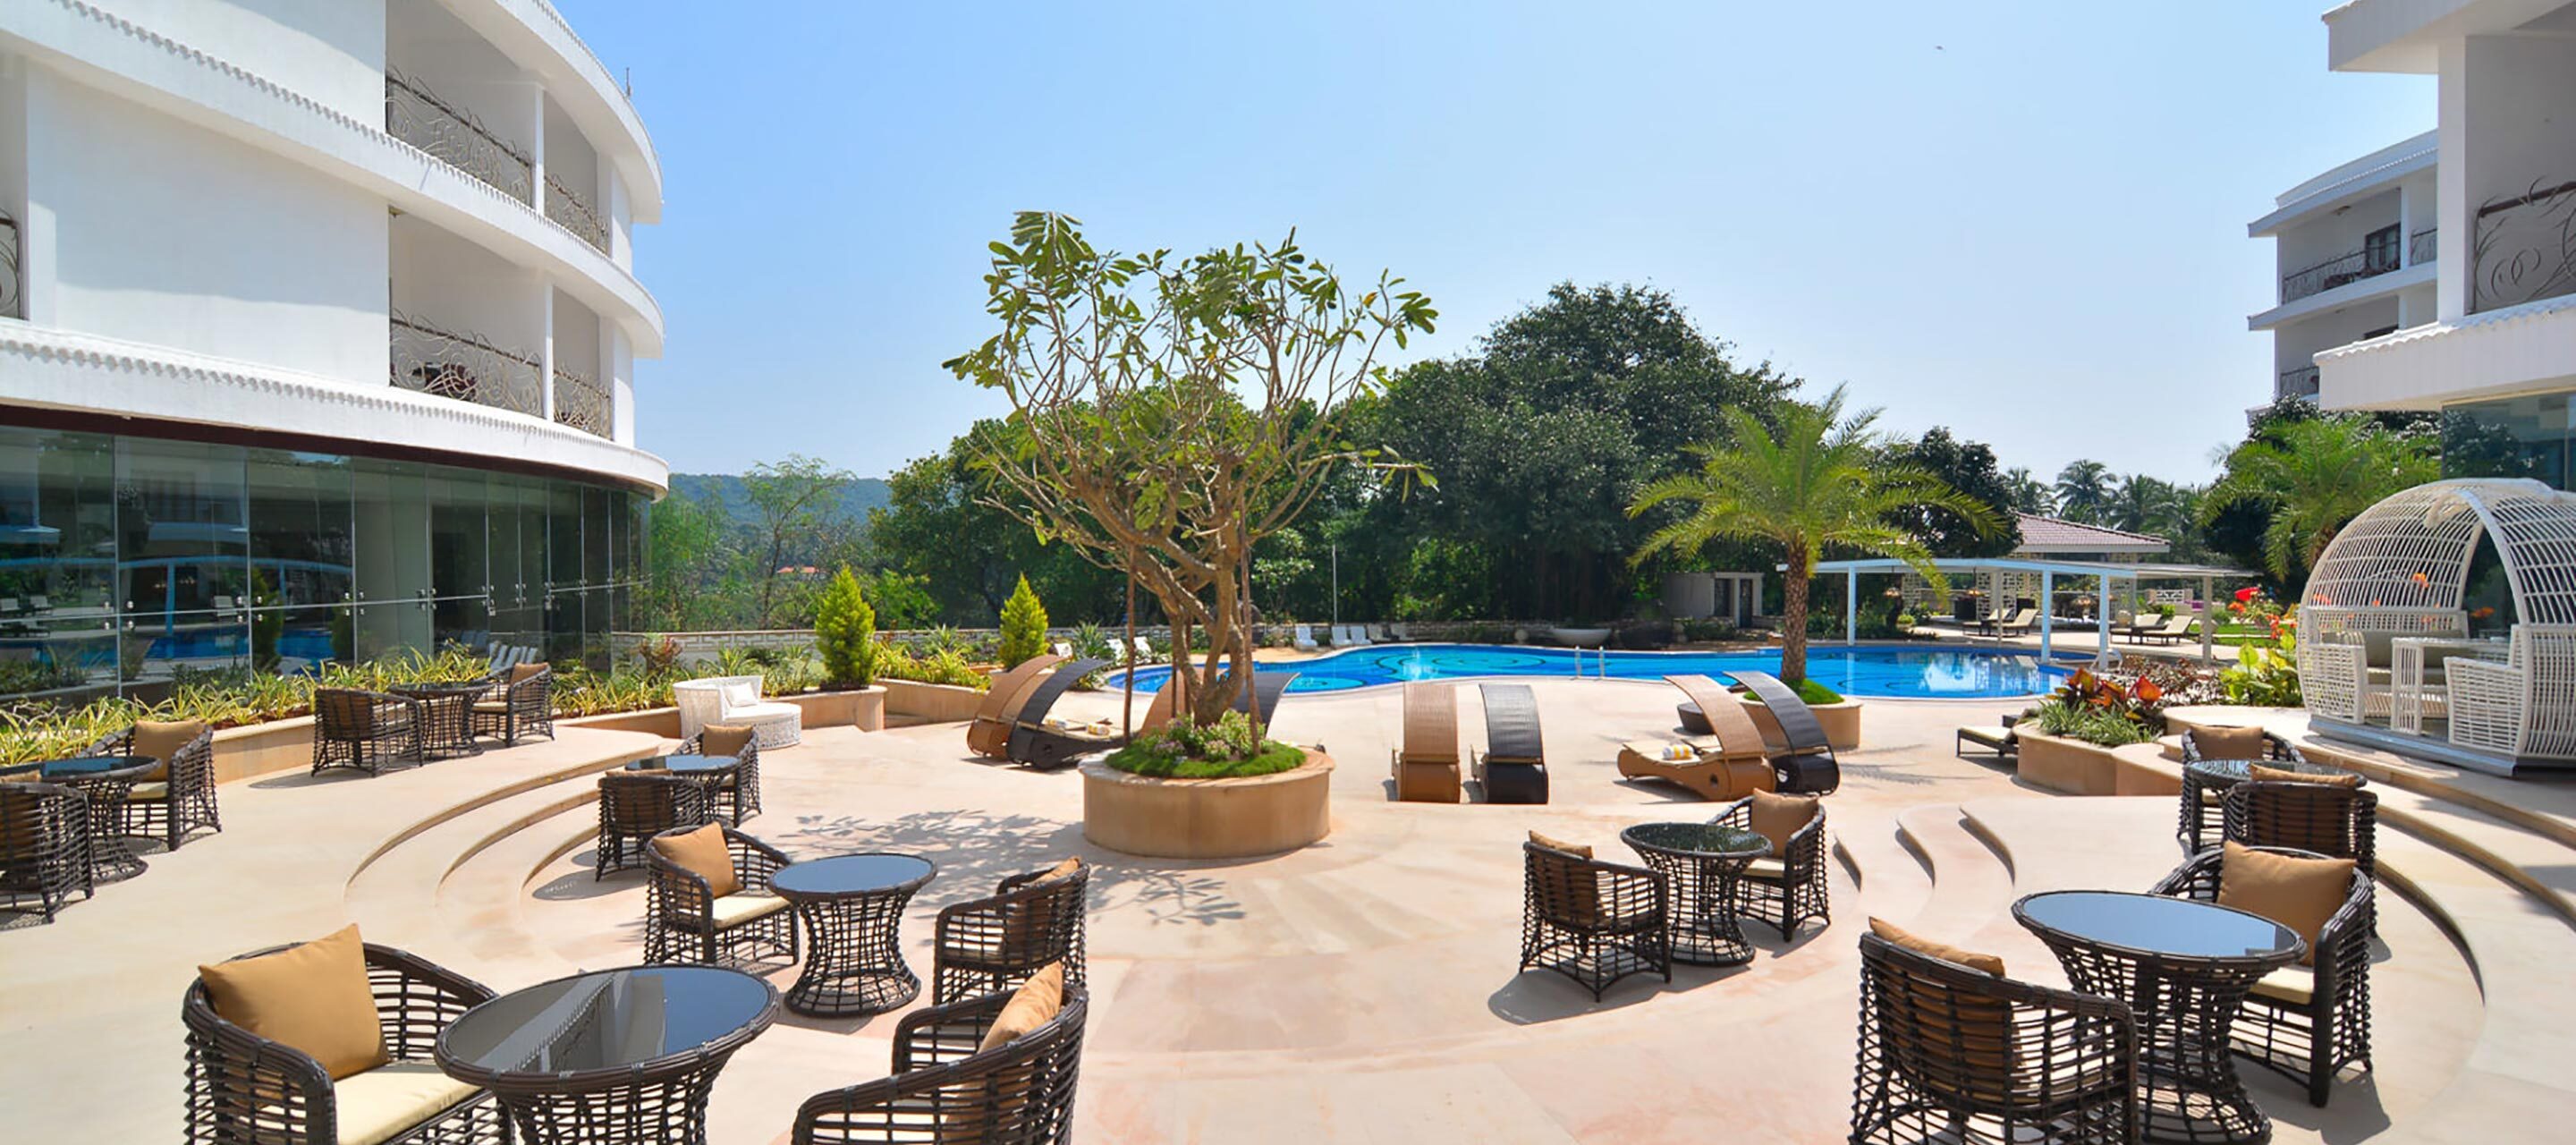 Park Regis Goa pool area